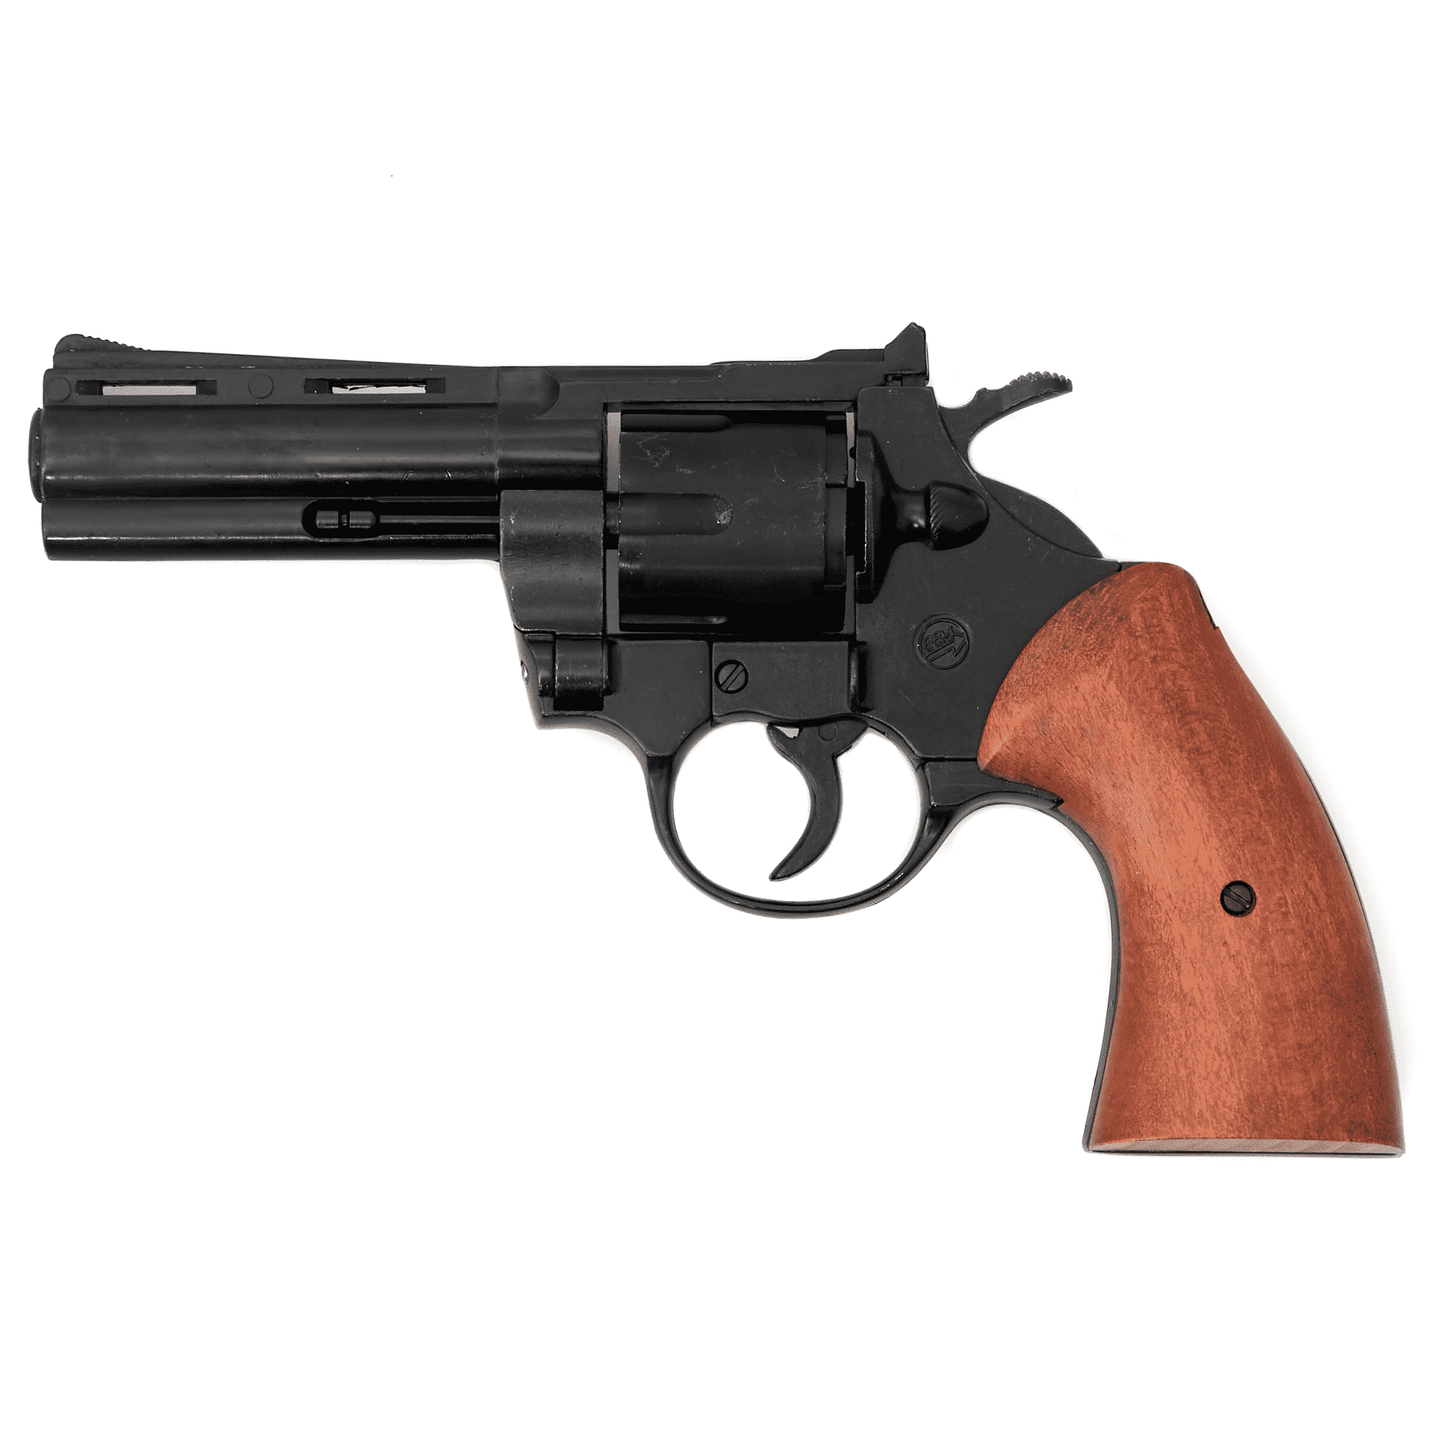 9mm Magnum Blank Firing Revolver- Black Finish